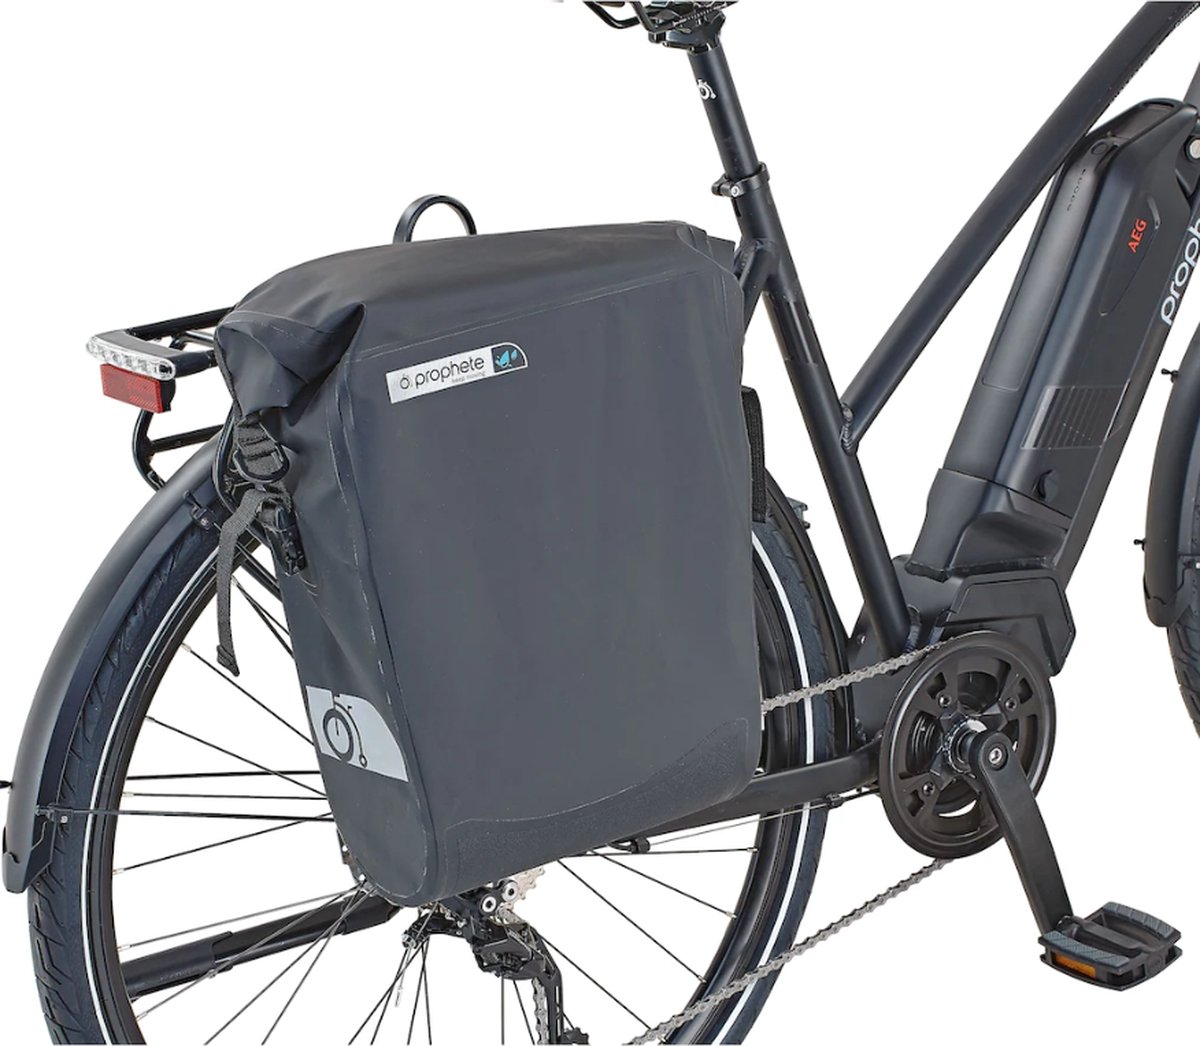 De HikeMeister® Prophete Roll top E bike Luxe waterdichte enkele 20 liter fietstas – zwart – met reflectie veiligheid – 100% Waterdicht met schouderriem